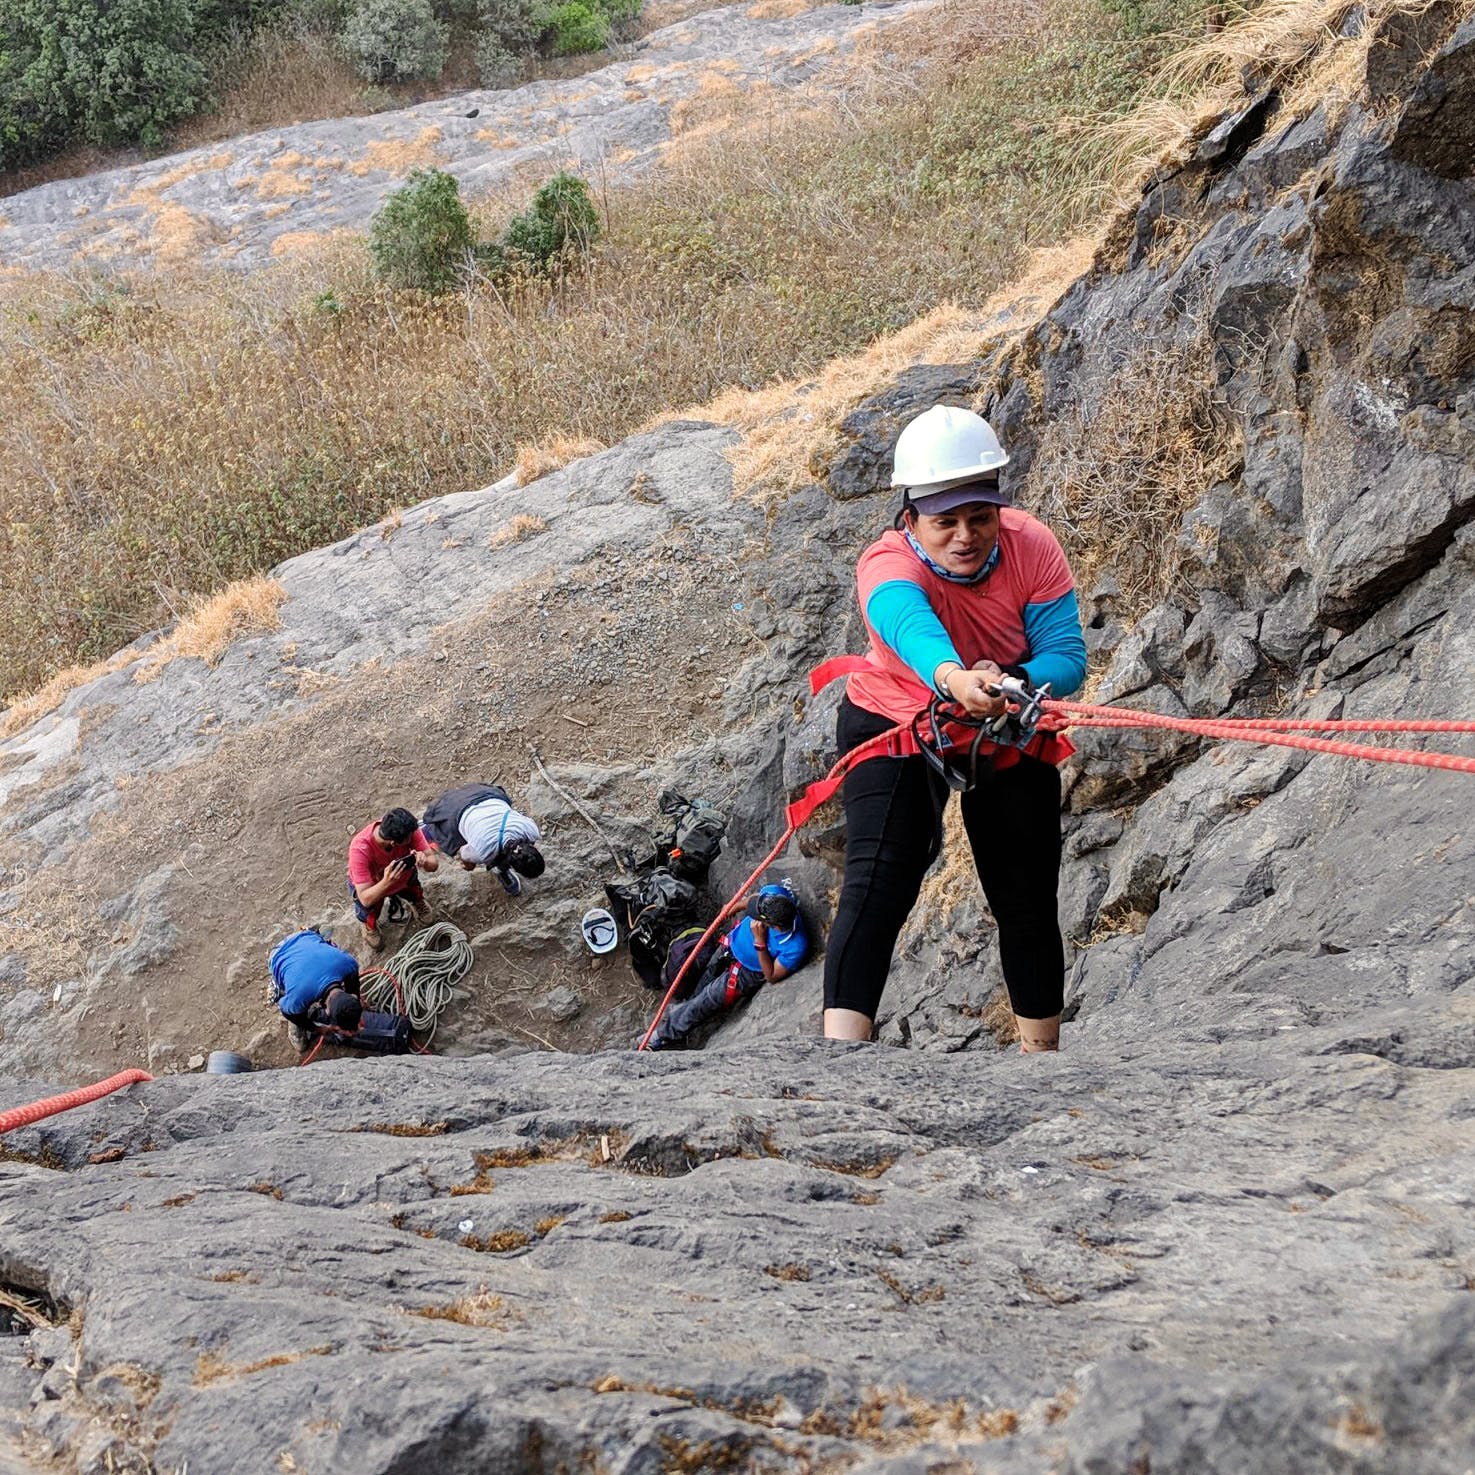 Climbing,Adventure,Rock climbing,Outdoor recreation,Recreation,Climbing harness,Abseiling,Sport climbing,Individual sports,Rock-climbing equipment